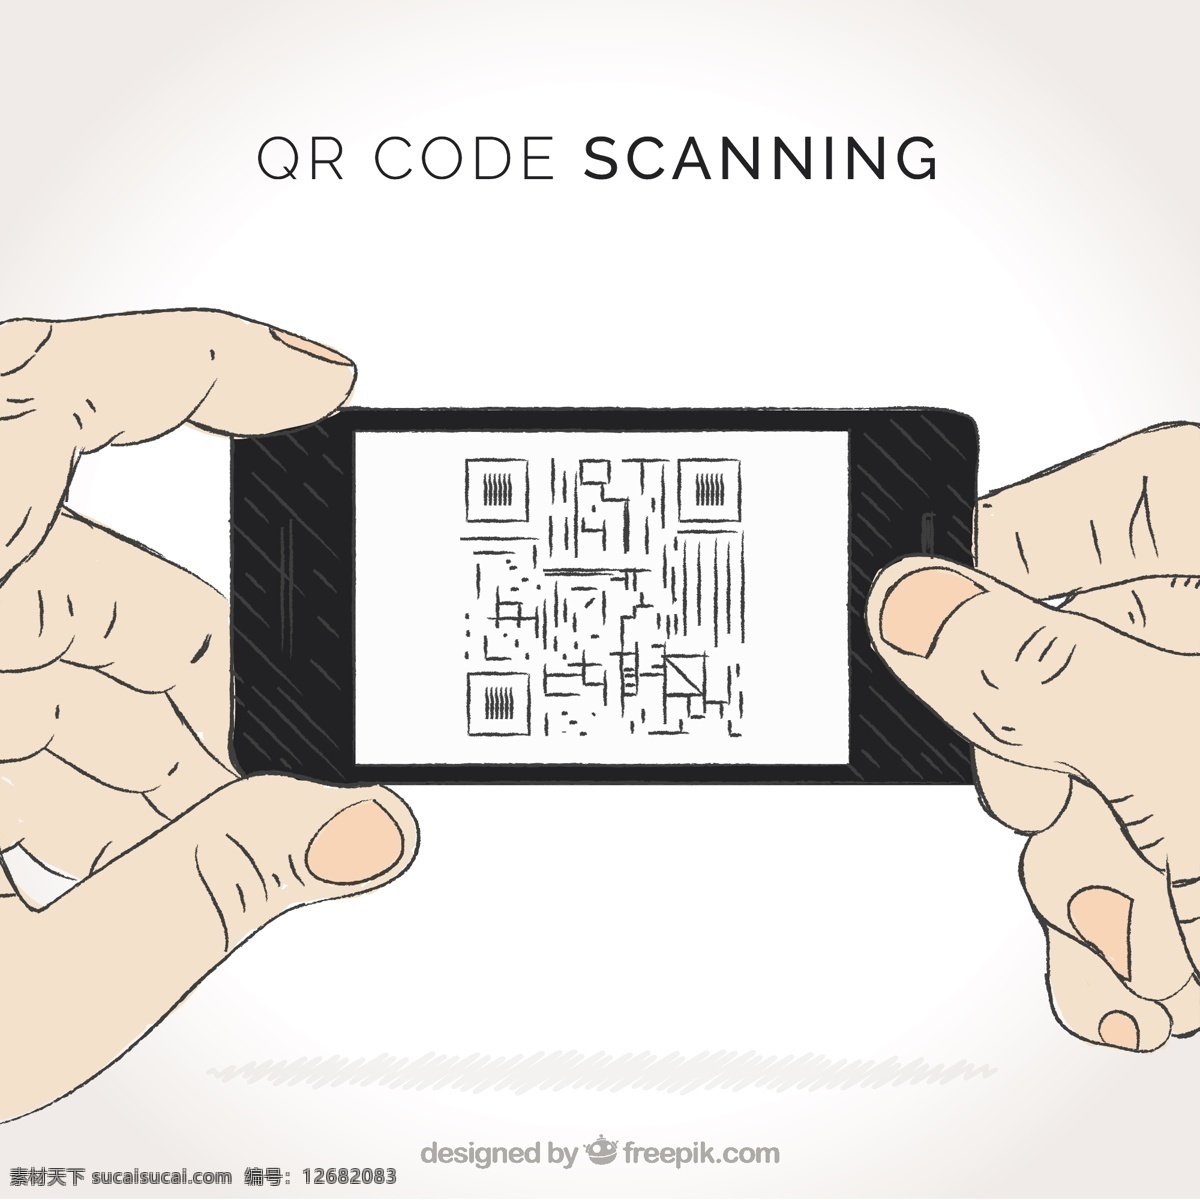 个人 扫描 qr 码 背景 抽象背景 标签 抽象 技术 手 电话 手绘 移动 网络 数字 技术背景 绘图 信息 手机 代码 数字背景 购买